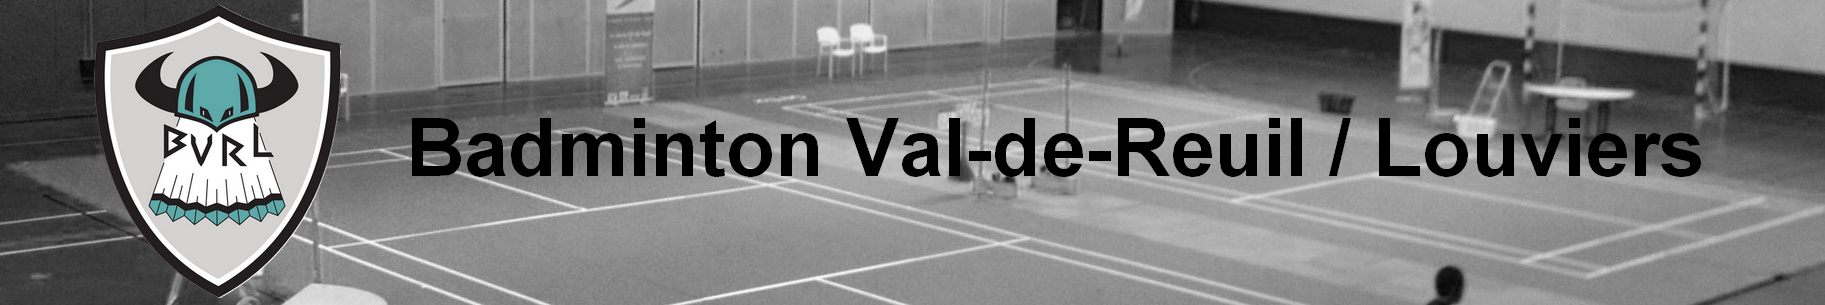 Badminton Val-de-Reuil / Louviers